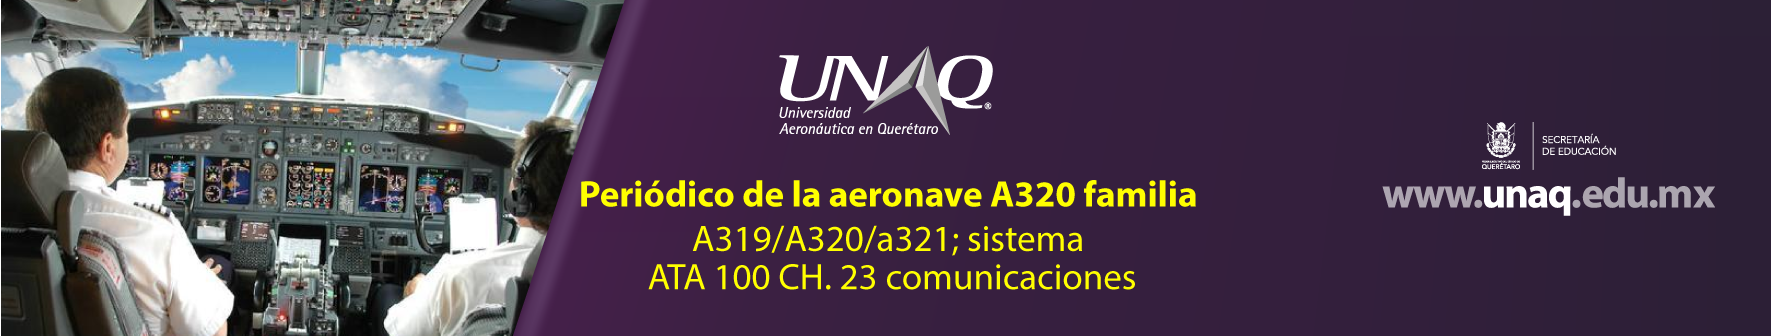 CURSO PERIODICO DE LA AERONAVE A320 FAMILIA A319/A320/A321; SISTEMA ATA 100 CH. 23 COMUNICACIONES